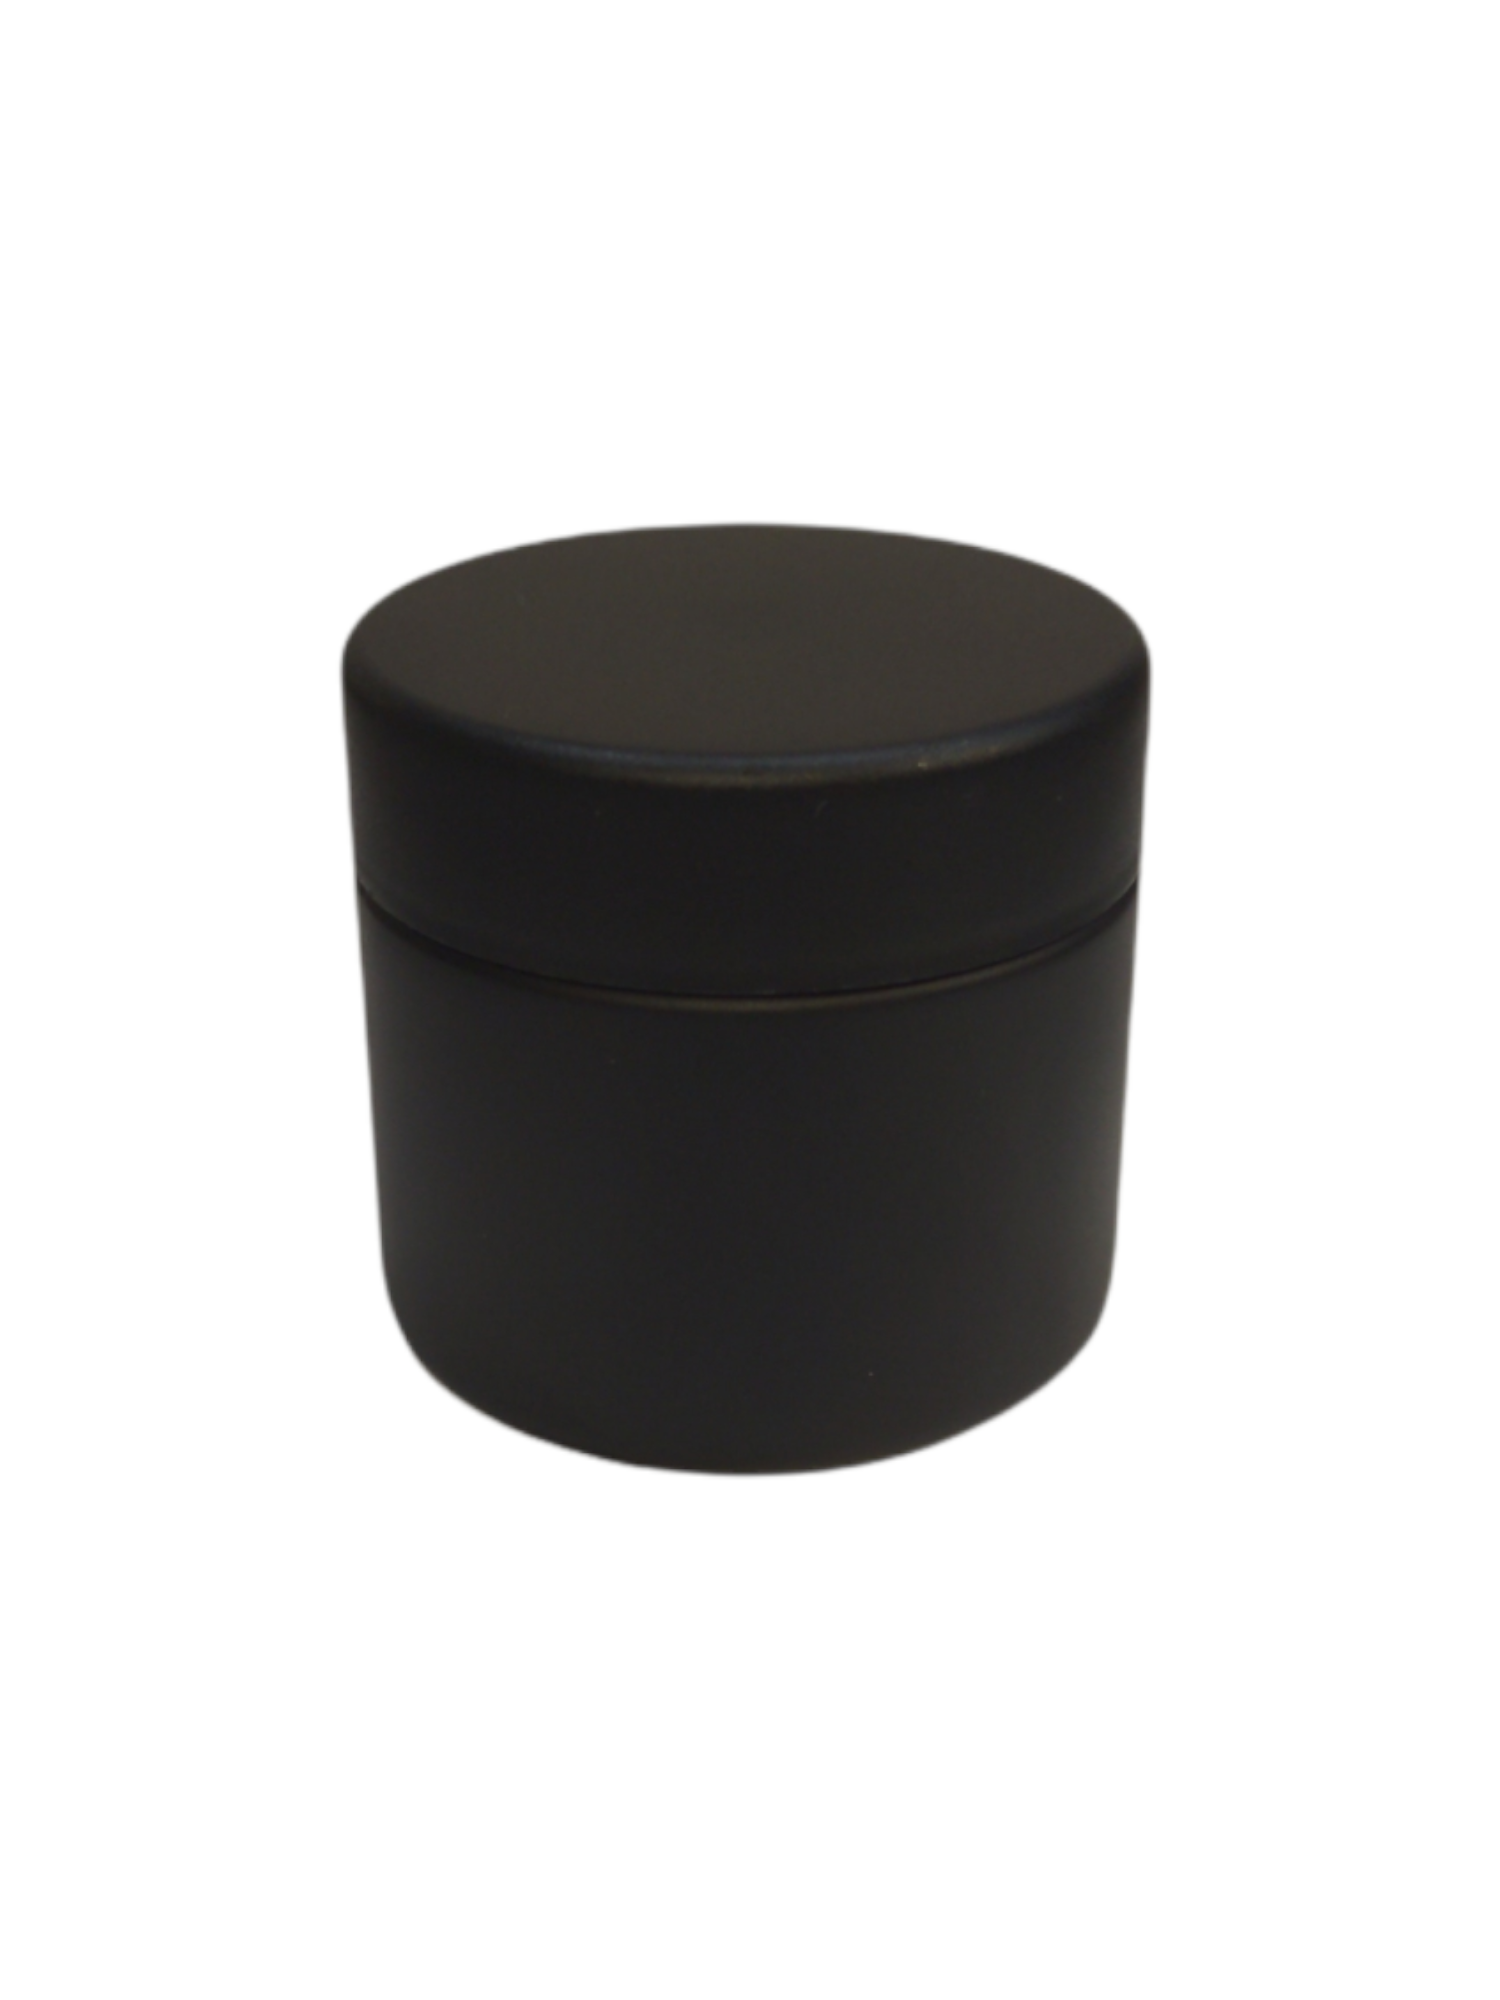 2 oz Child Resistant Glass Jar | Matte Black Jar w/ Black Plastic Screw Lid